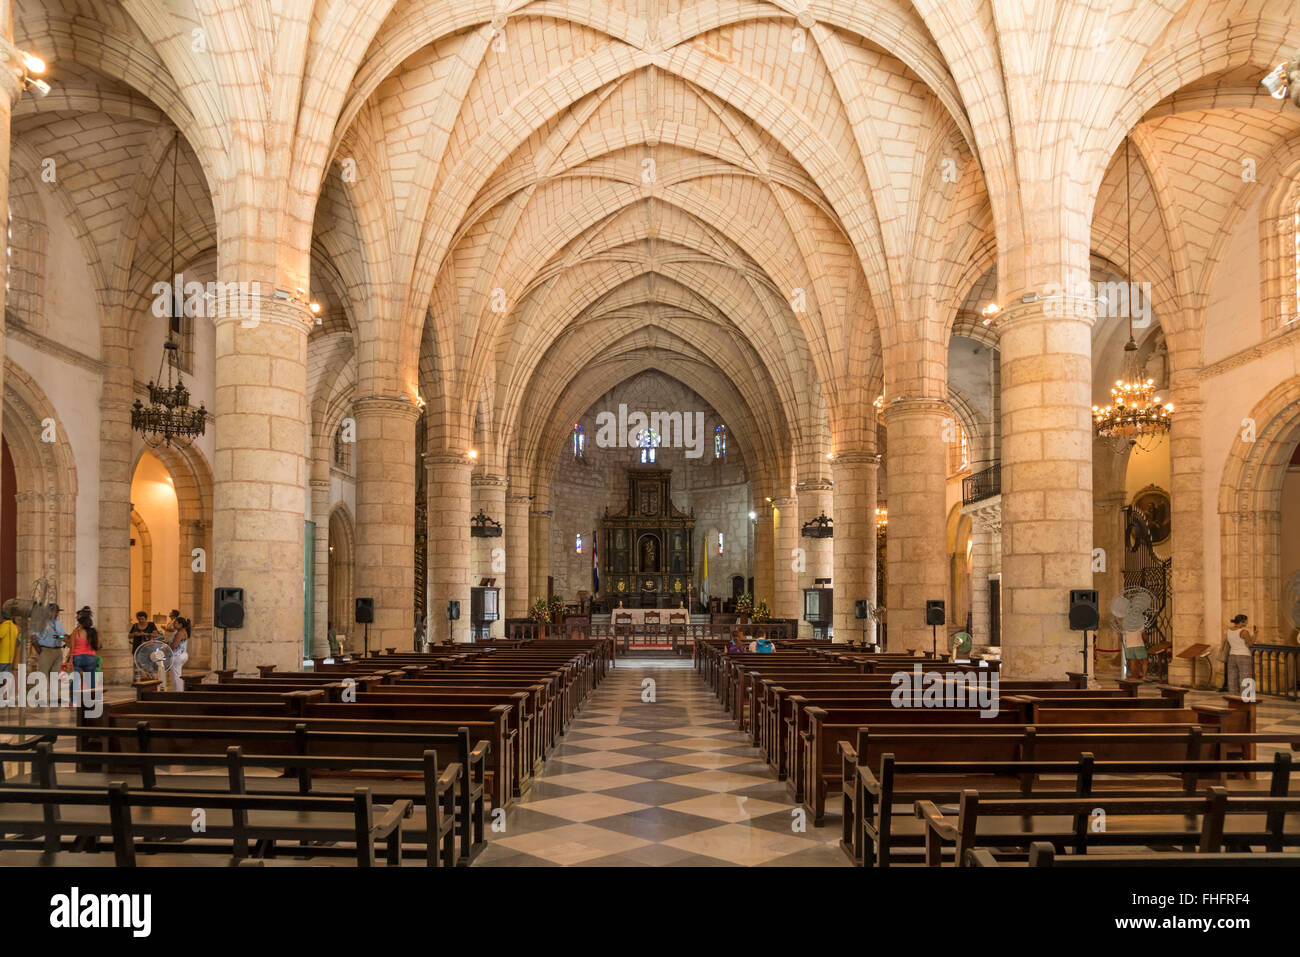 Resultado de imagen para la catedral de santo domingo primada de america